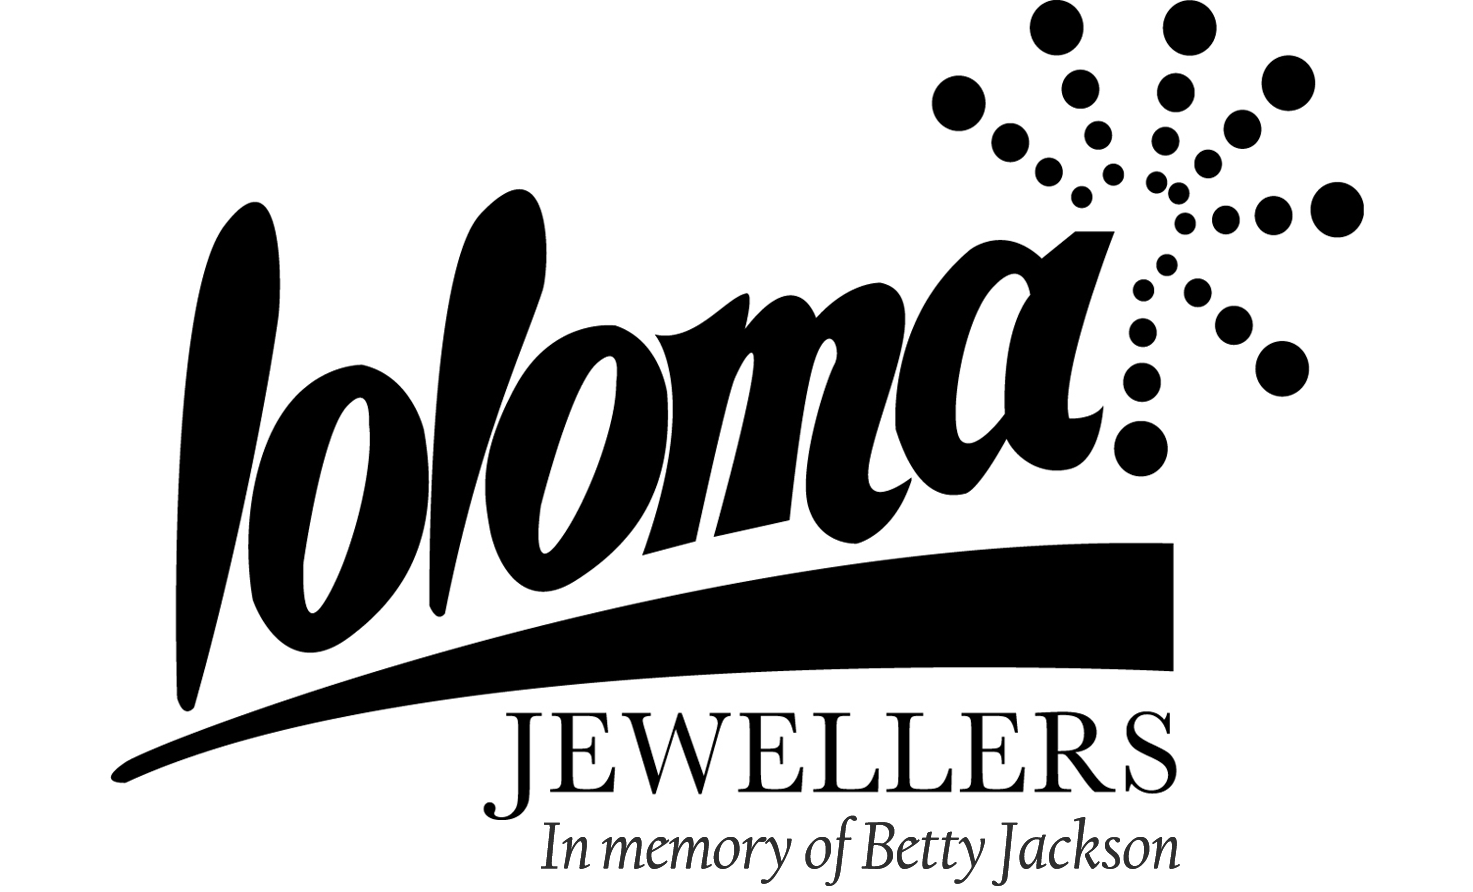 Loloma Jewellers